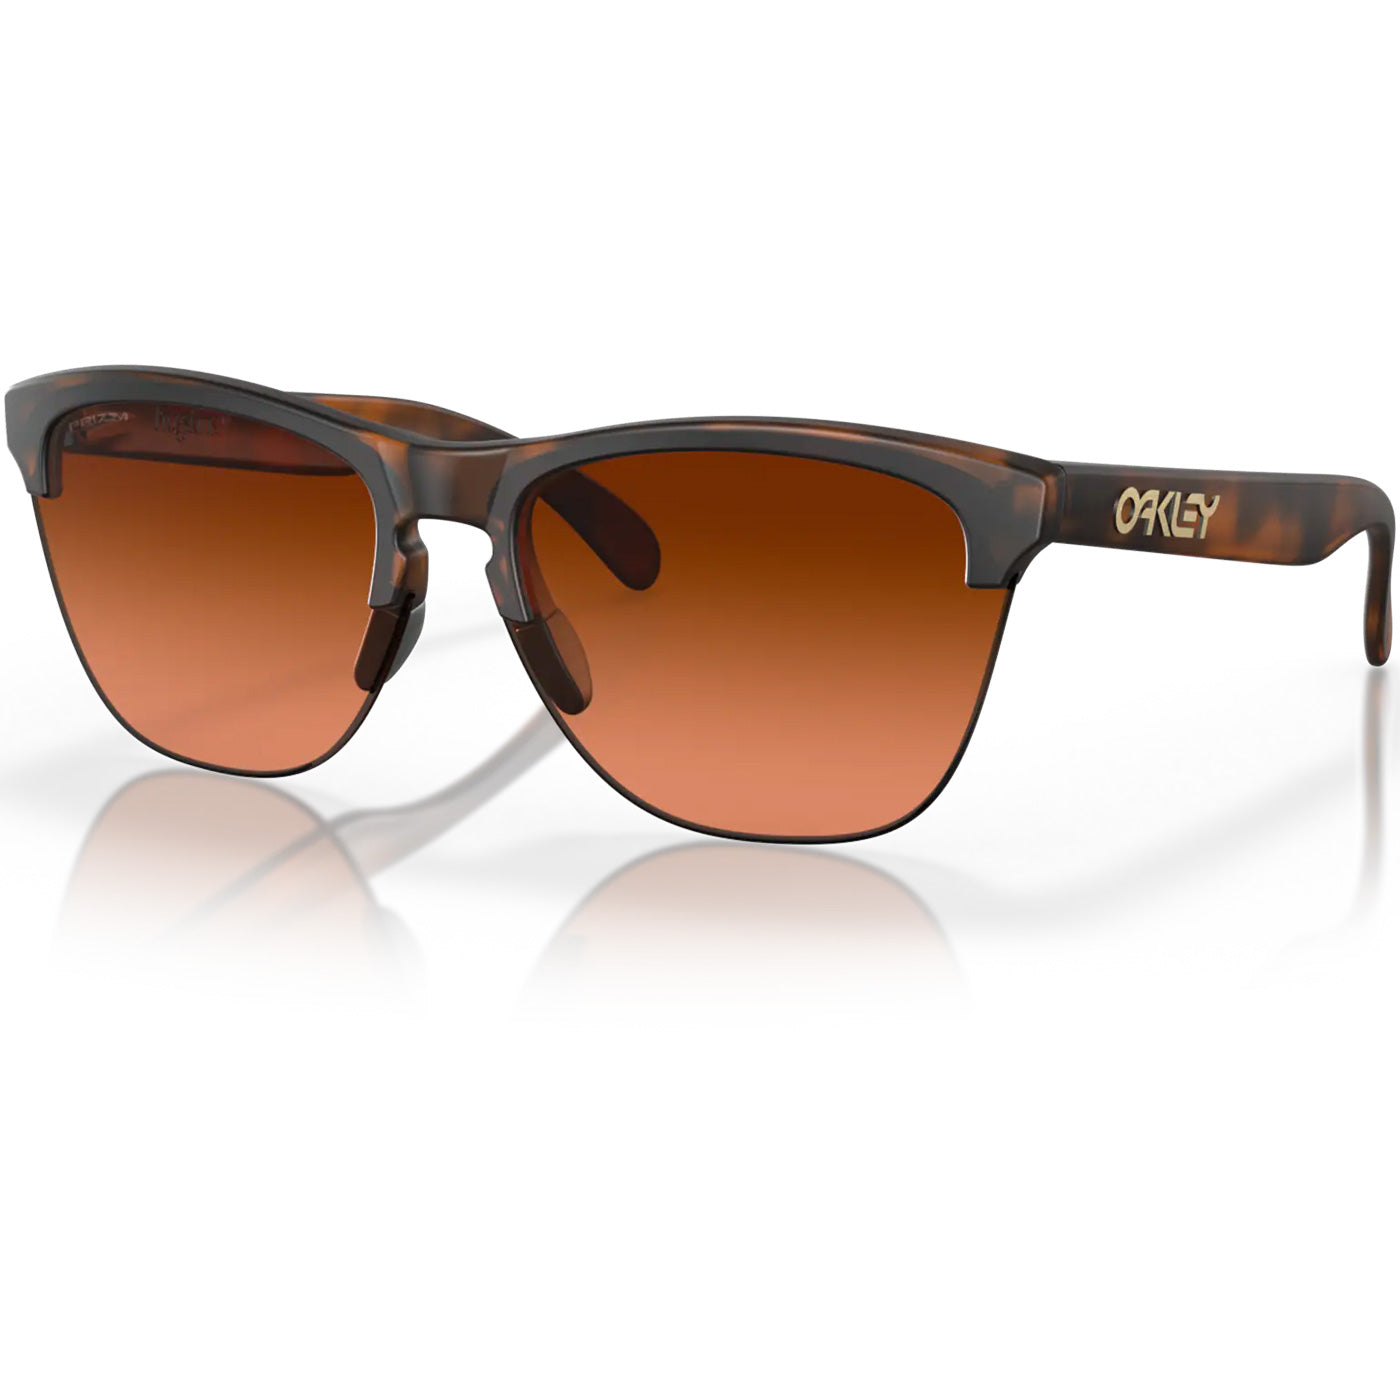 Oakley Frogskins Lite sunglasses - Matte Tortoise Prizm Brown Gradient